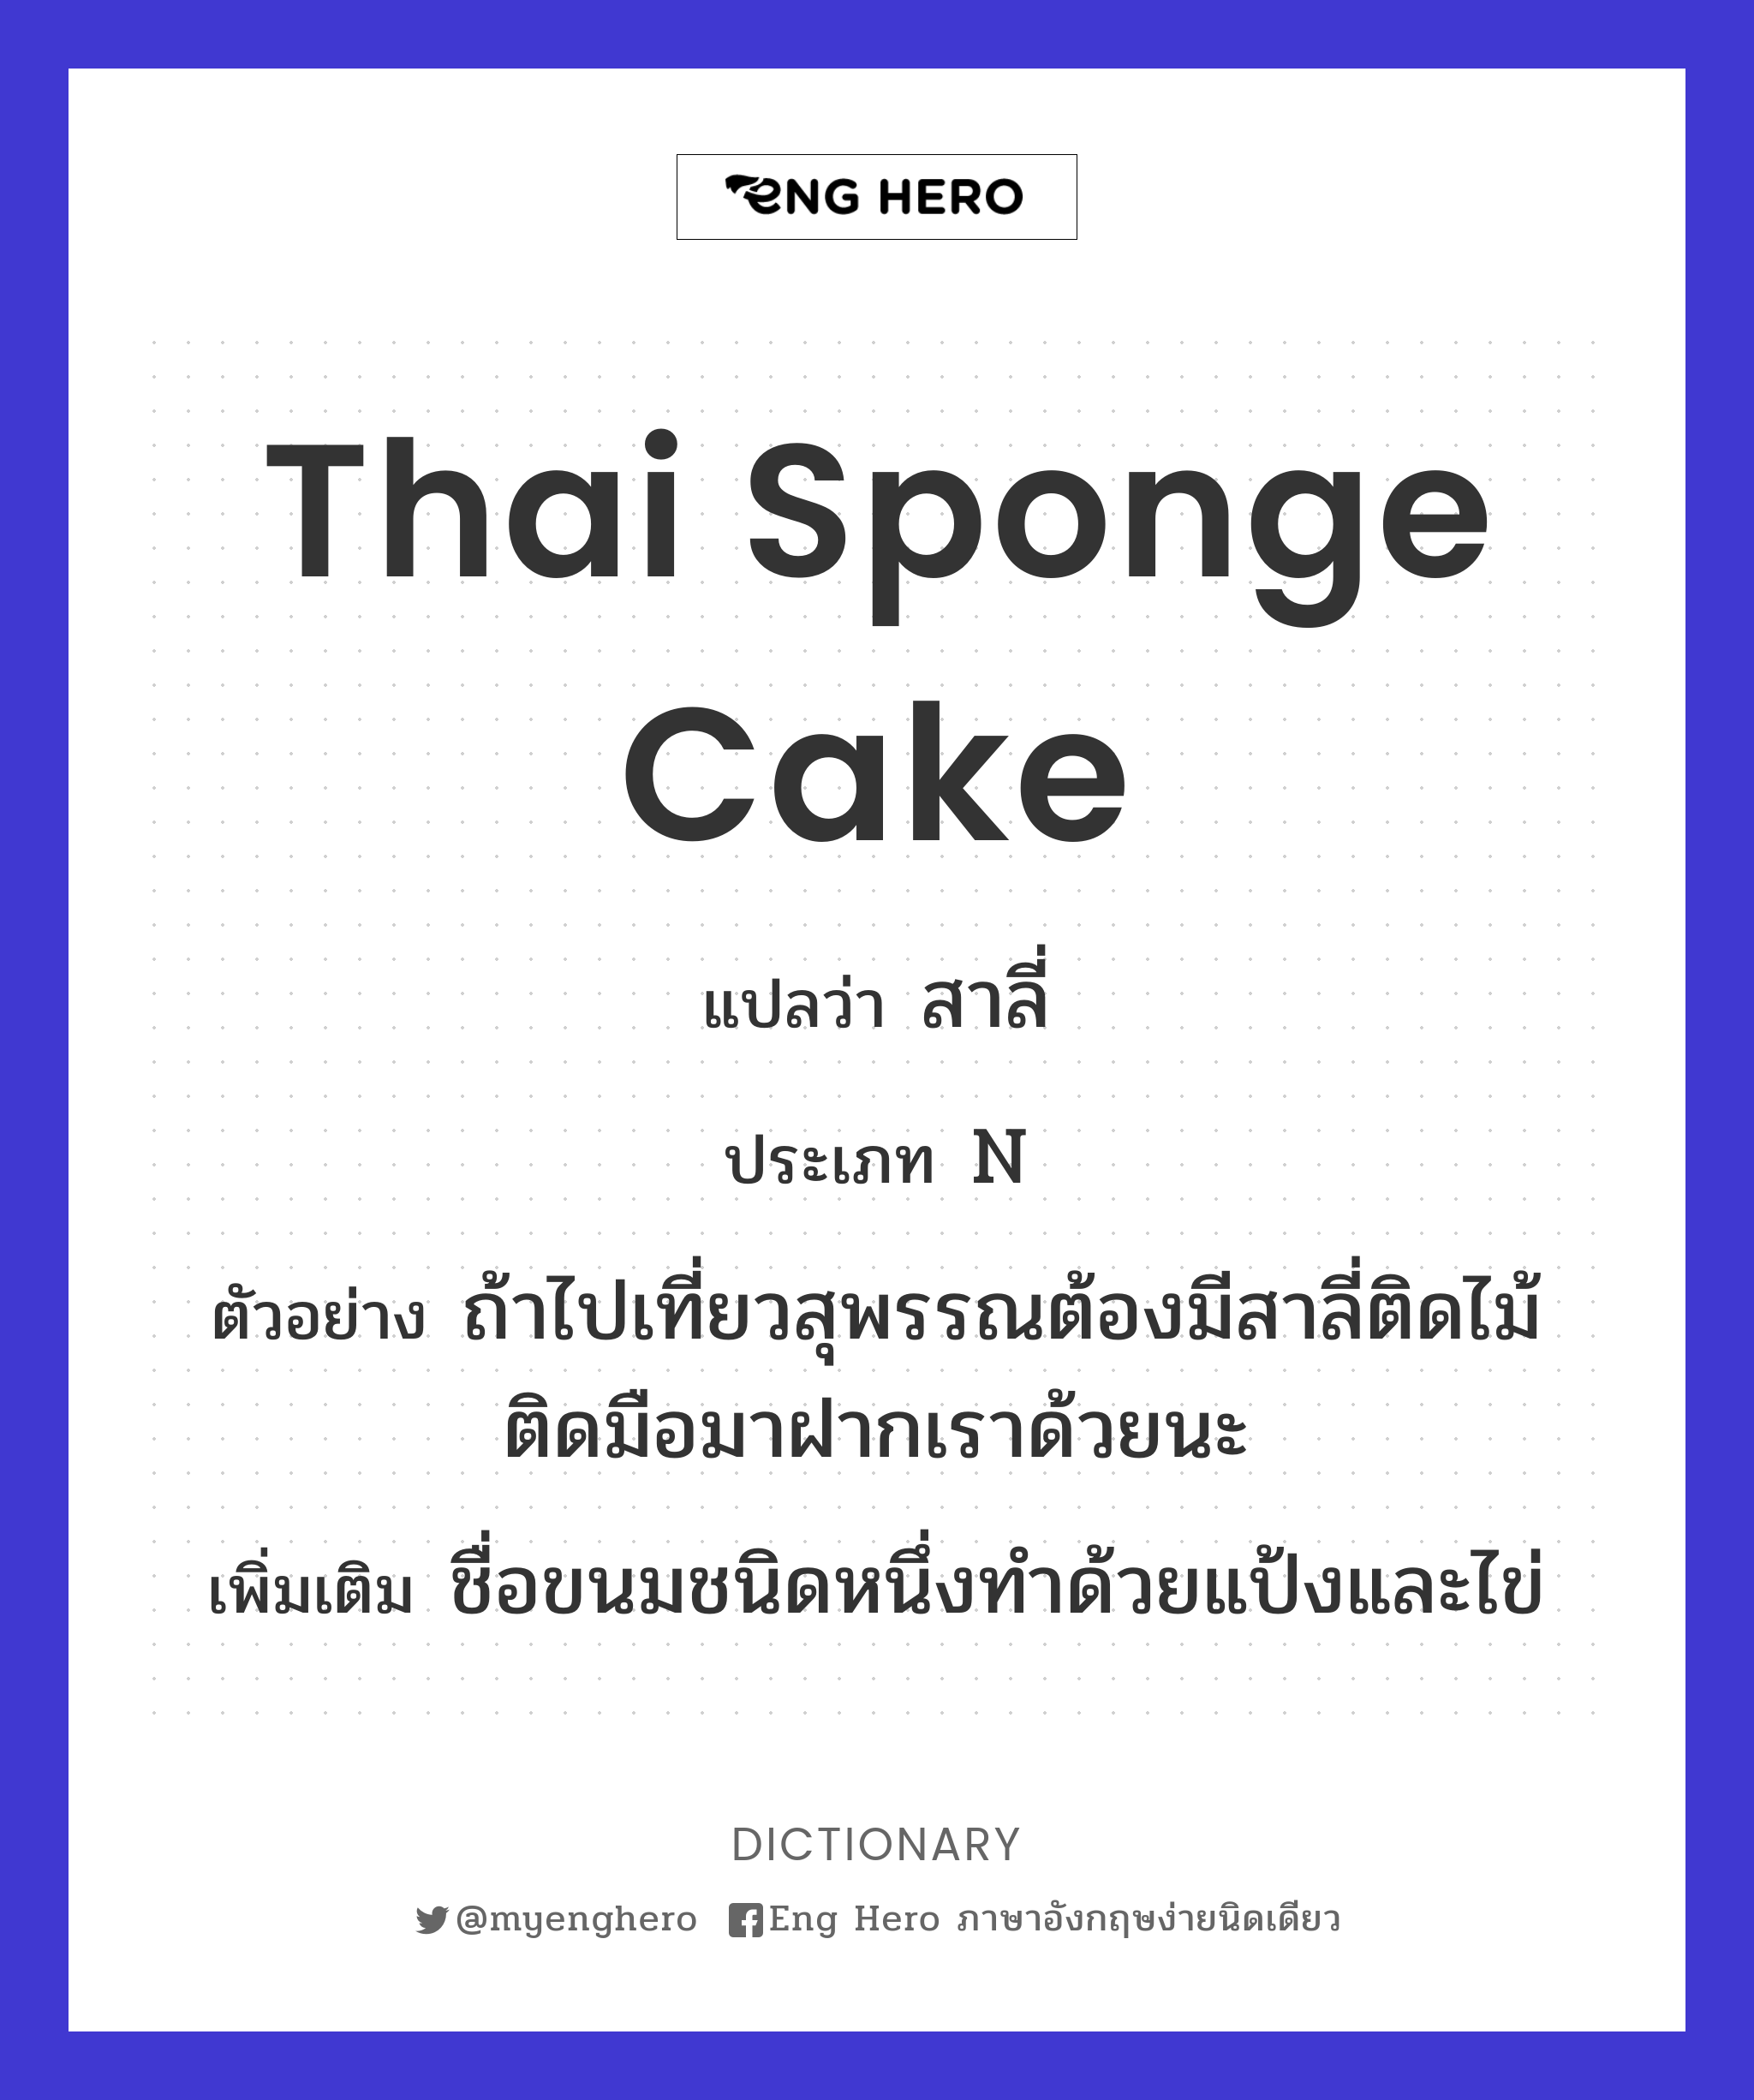 Thai sponge cake